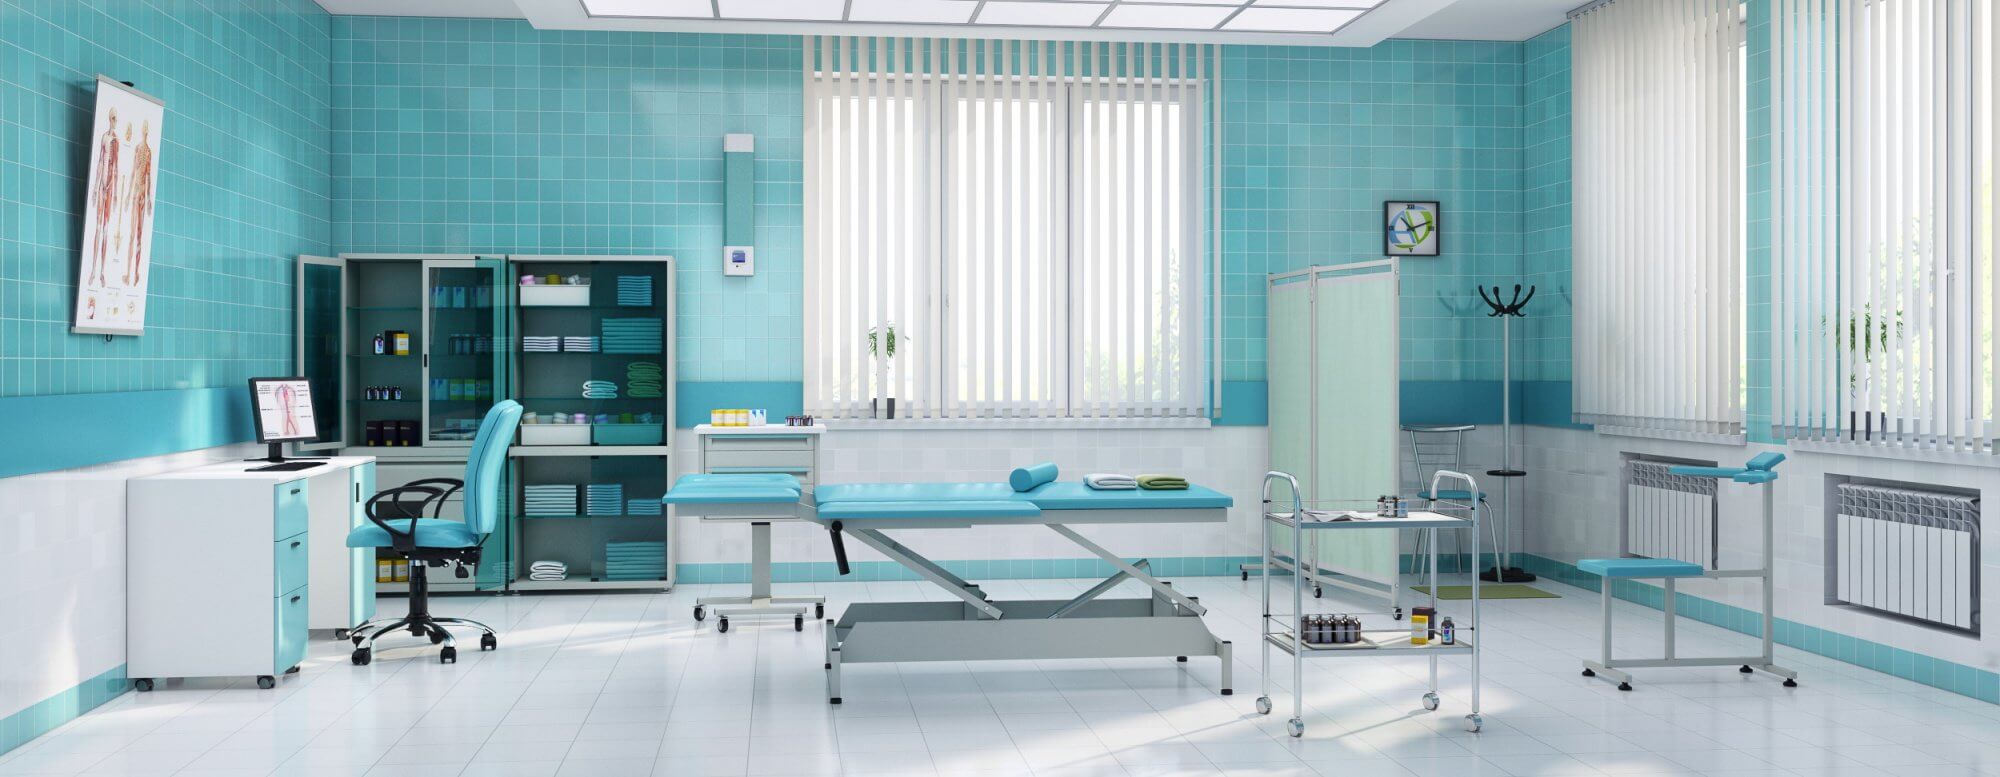 Какая мебель должна быть в медицинском кабинете?